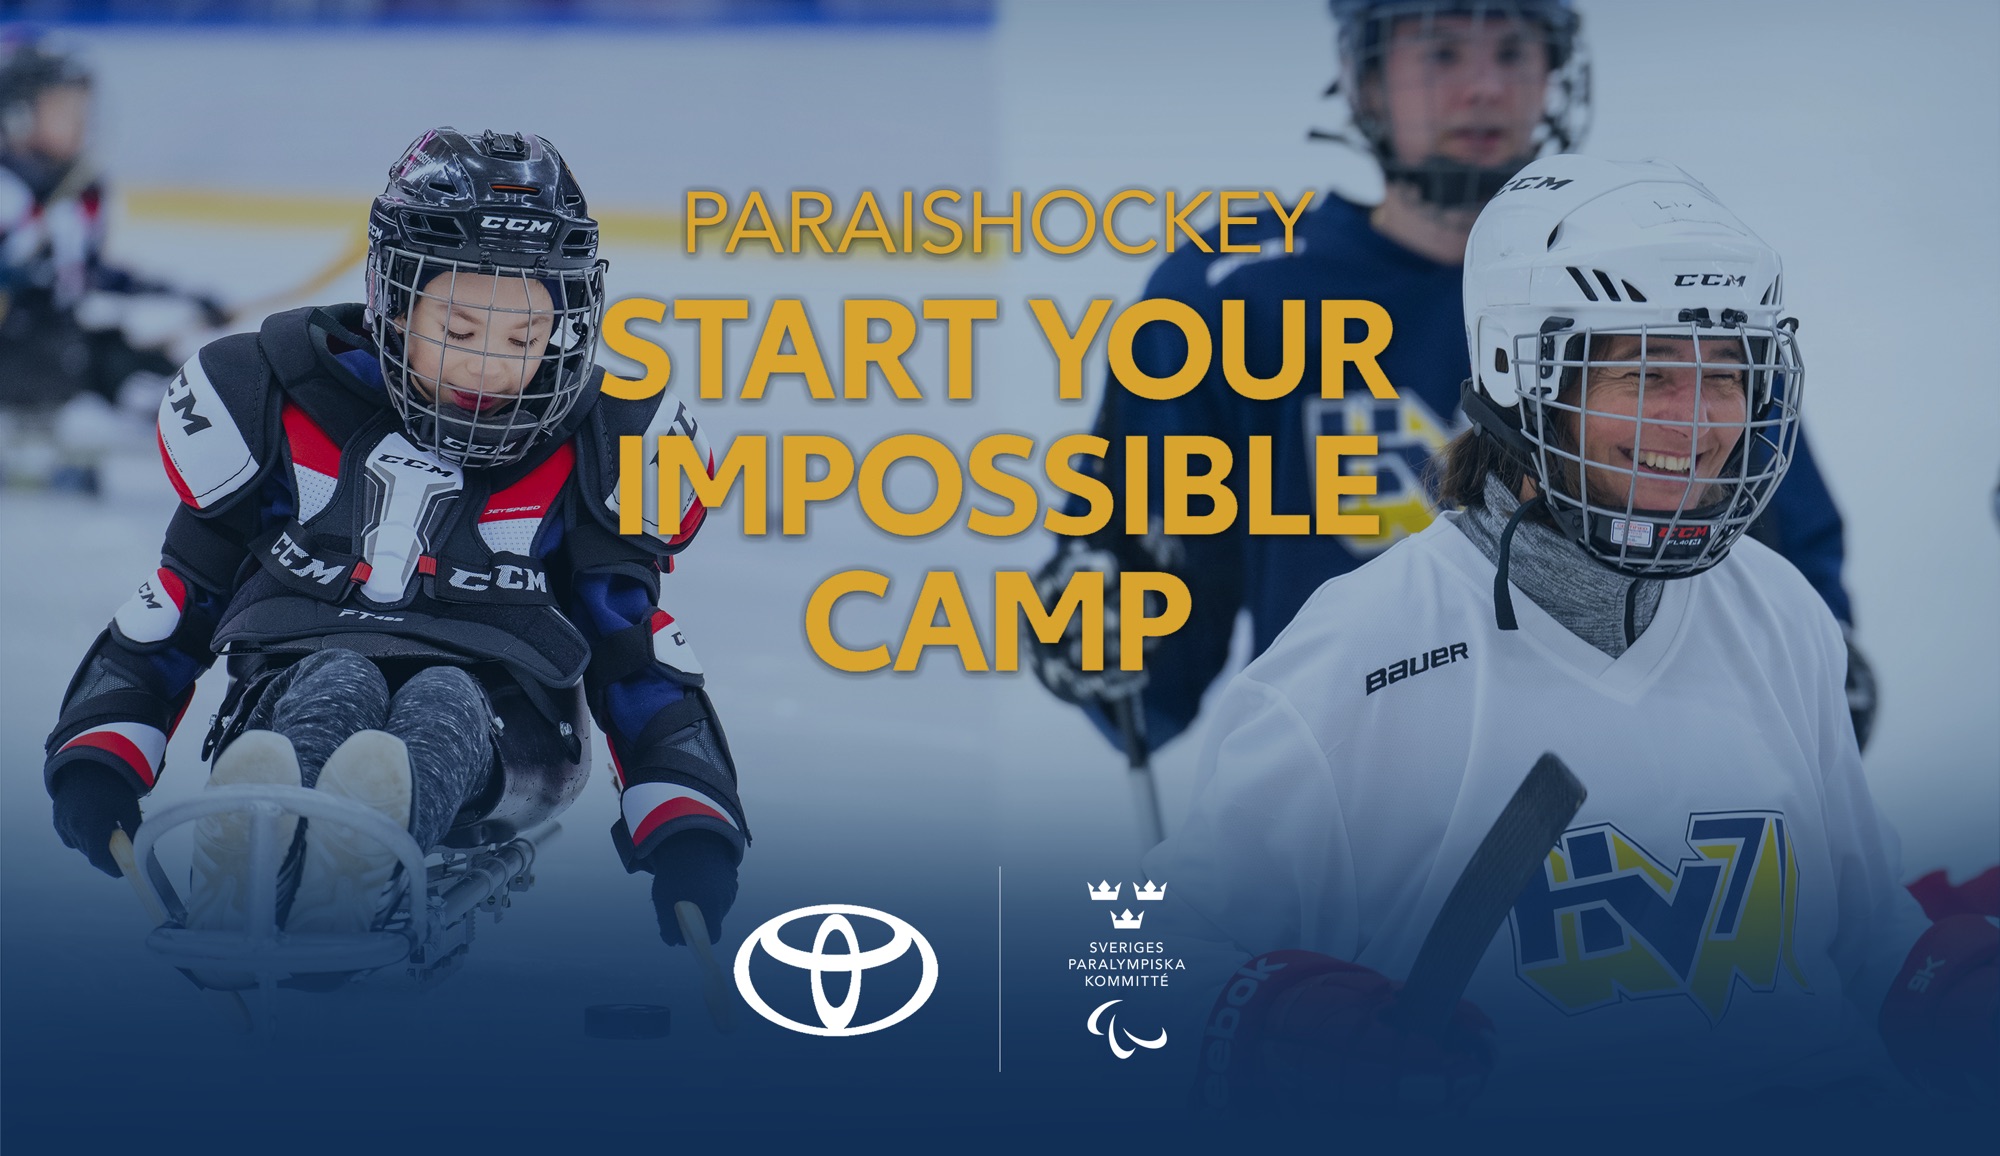 Två bilder på paraishockey, hockey sittande i en skridskokälke. Text: Paraishockey, Start Your Impossible Camp. Logotyper för Sveriges Paralympiska Kommitté och Toyota.